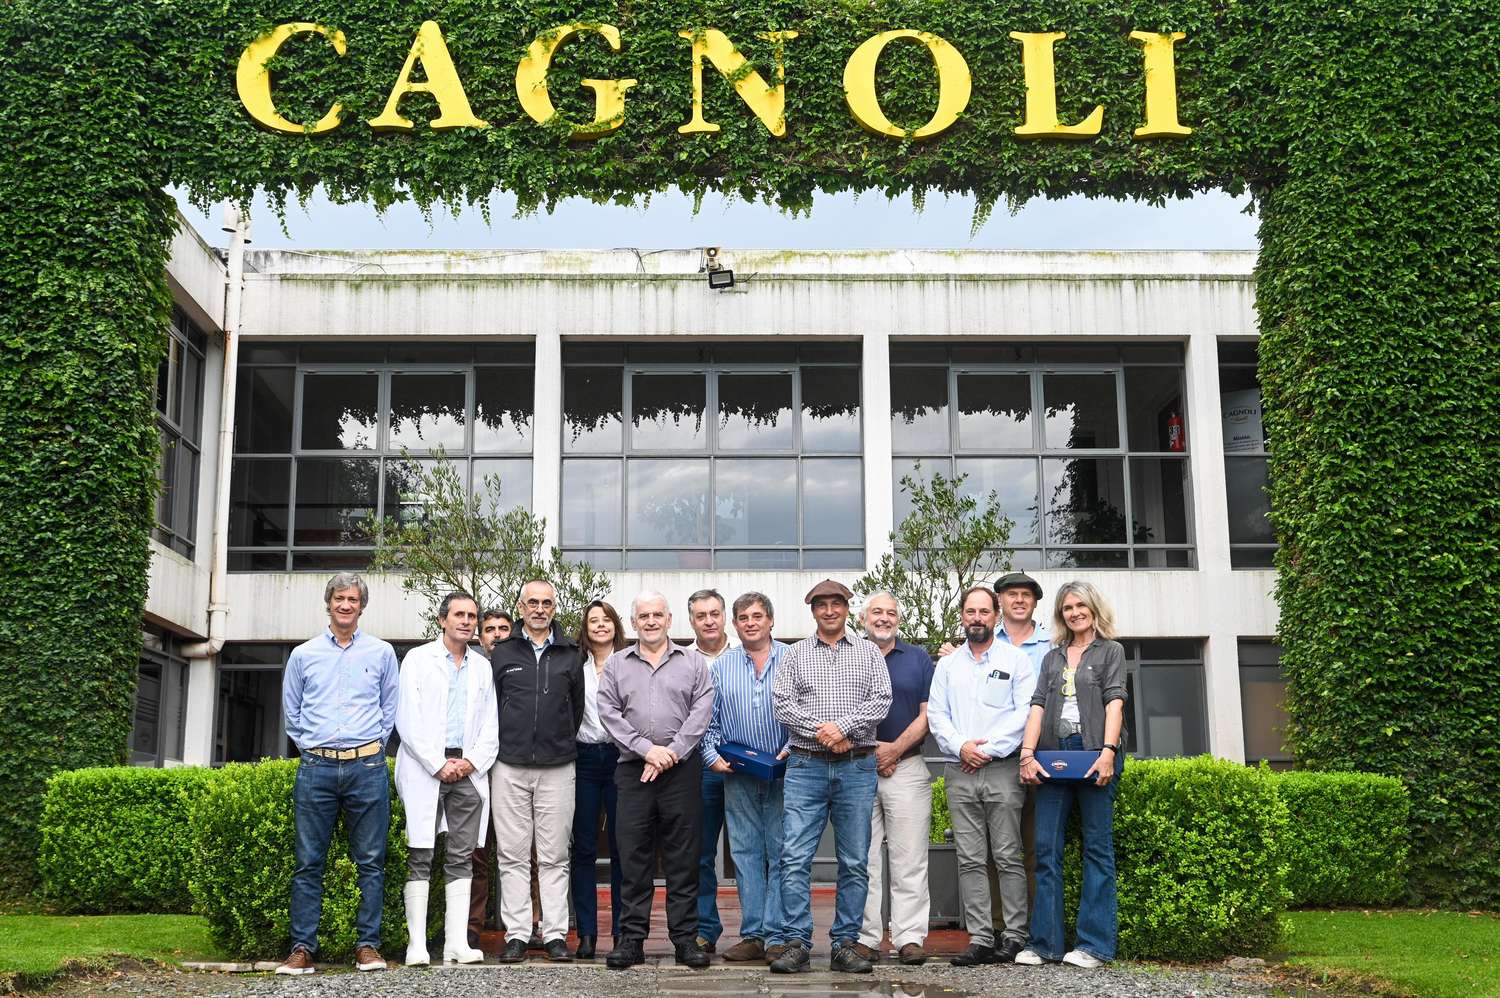 El secretario de Bioeconomía y autoridades de SENASA visitaron la planta Cagnoli en Tandil